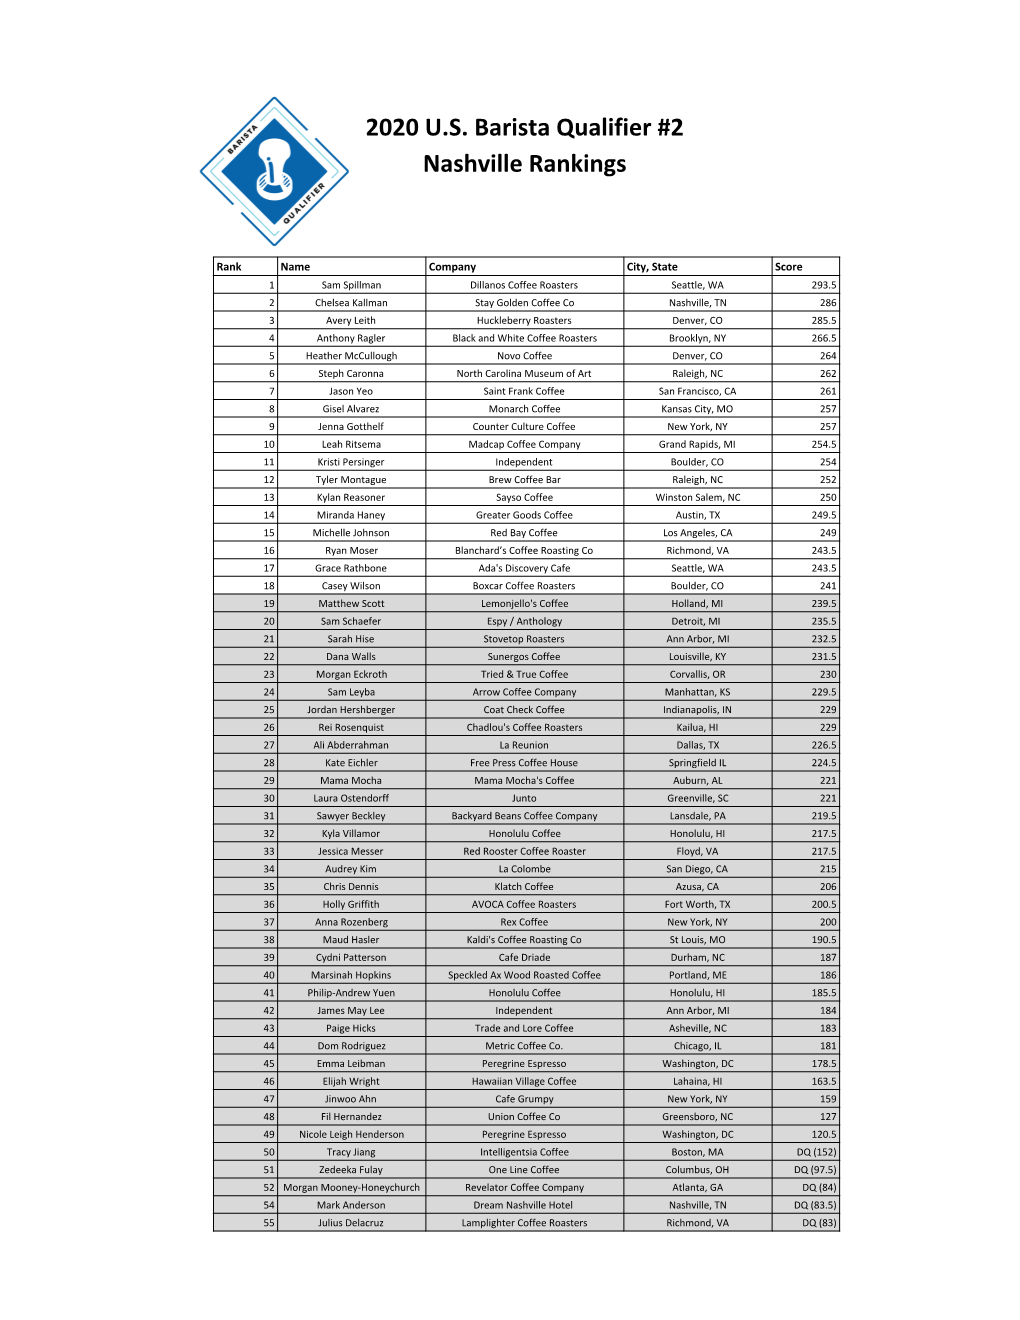 2020 U.S. Barista Qualifier #2 Nashville Rankings